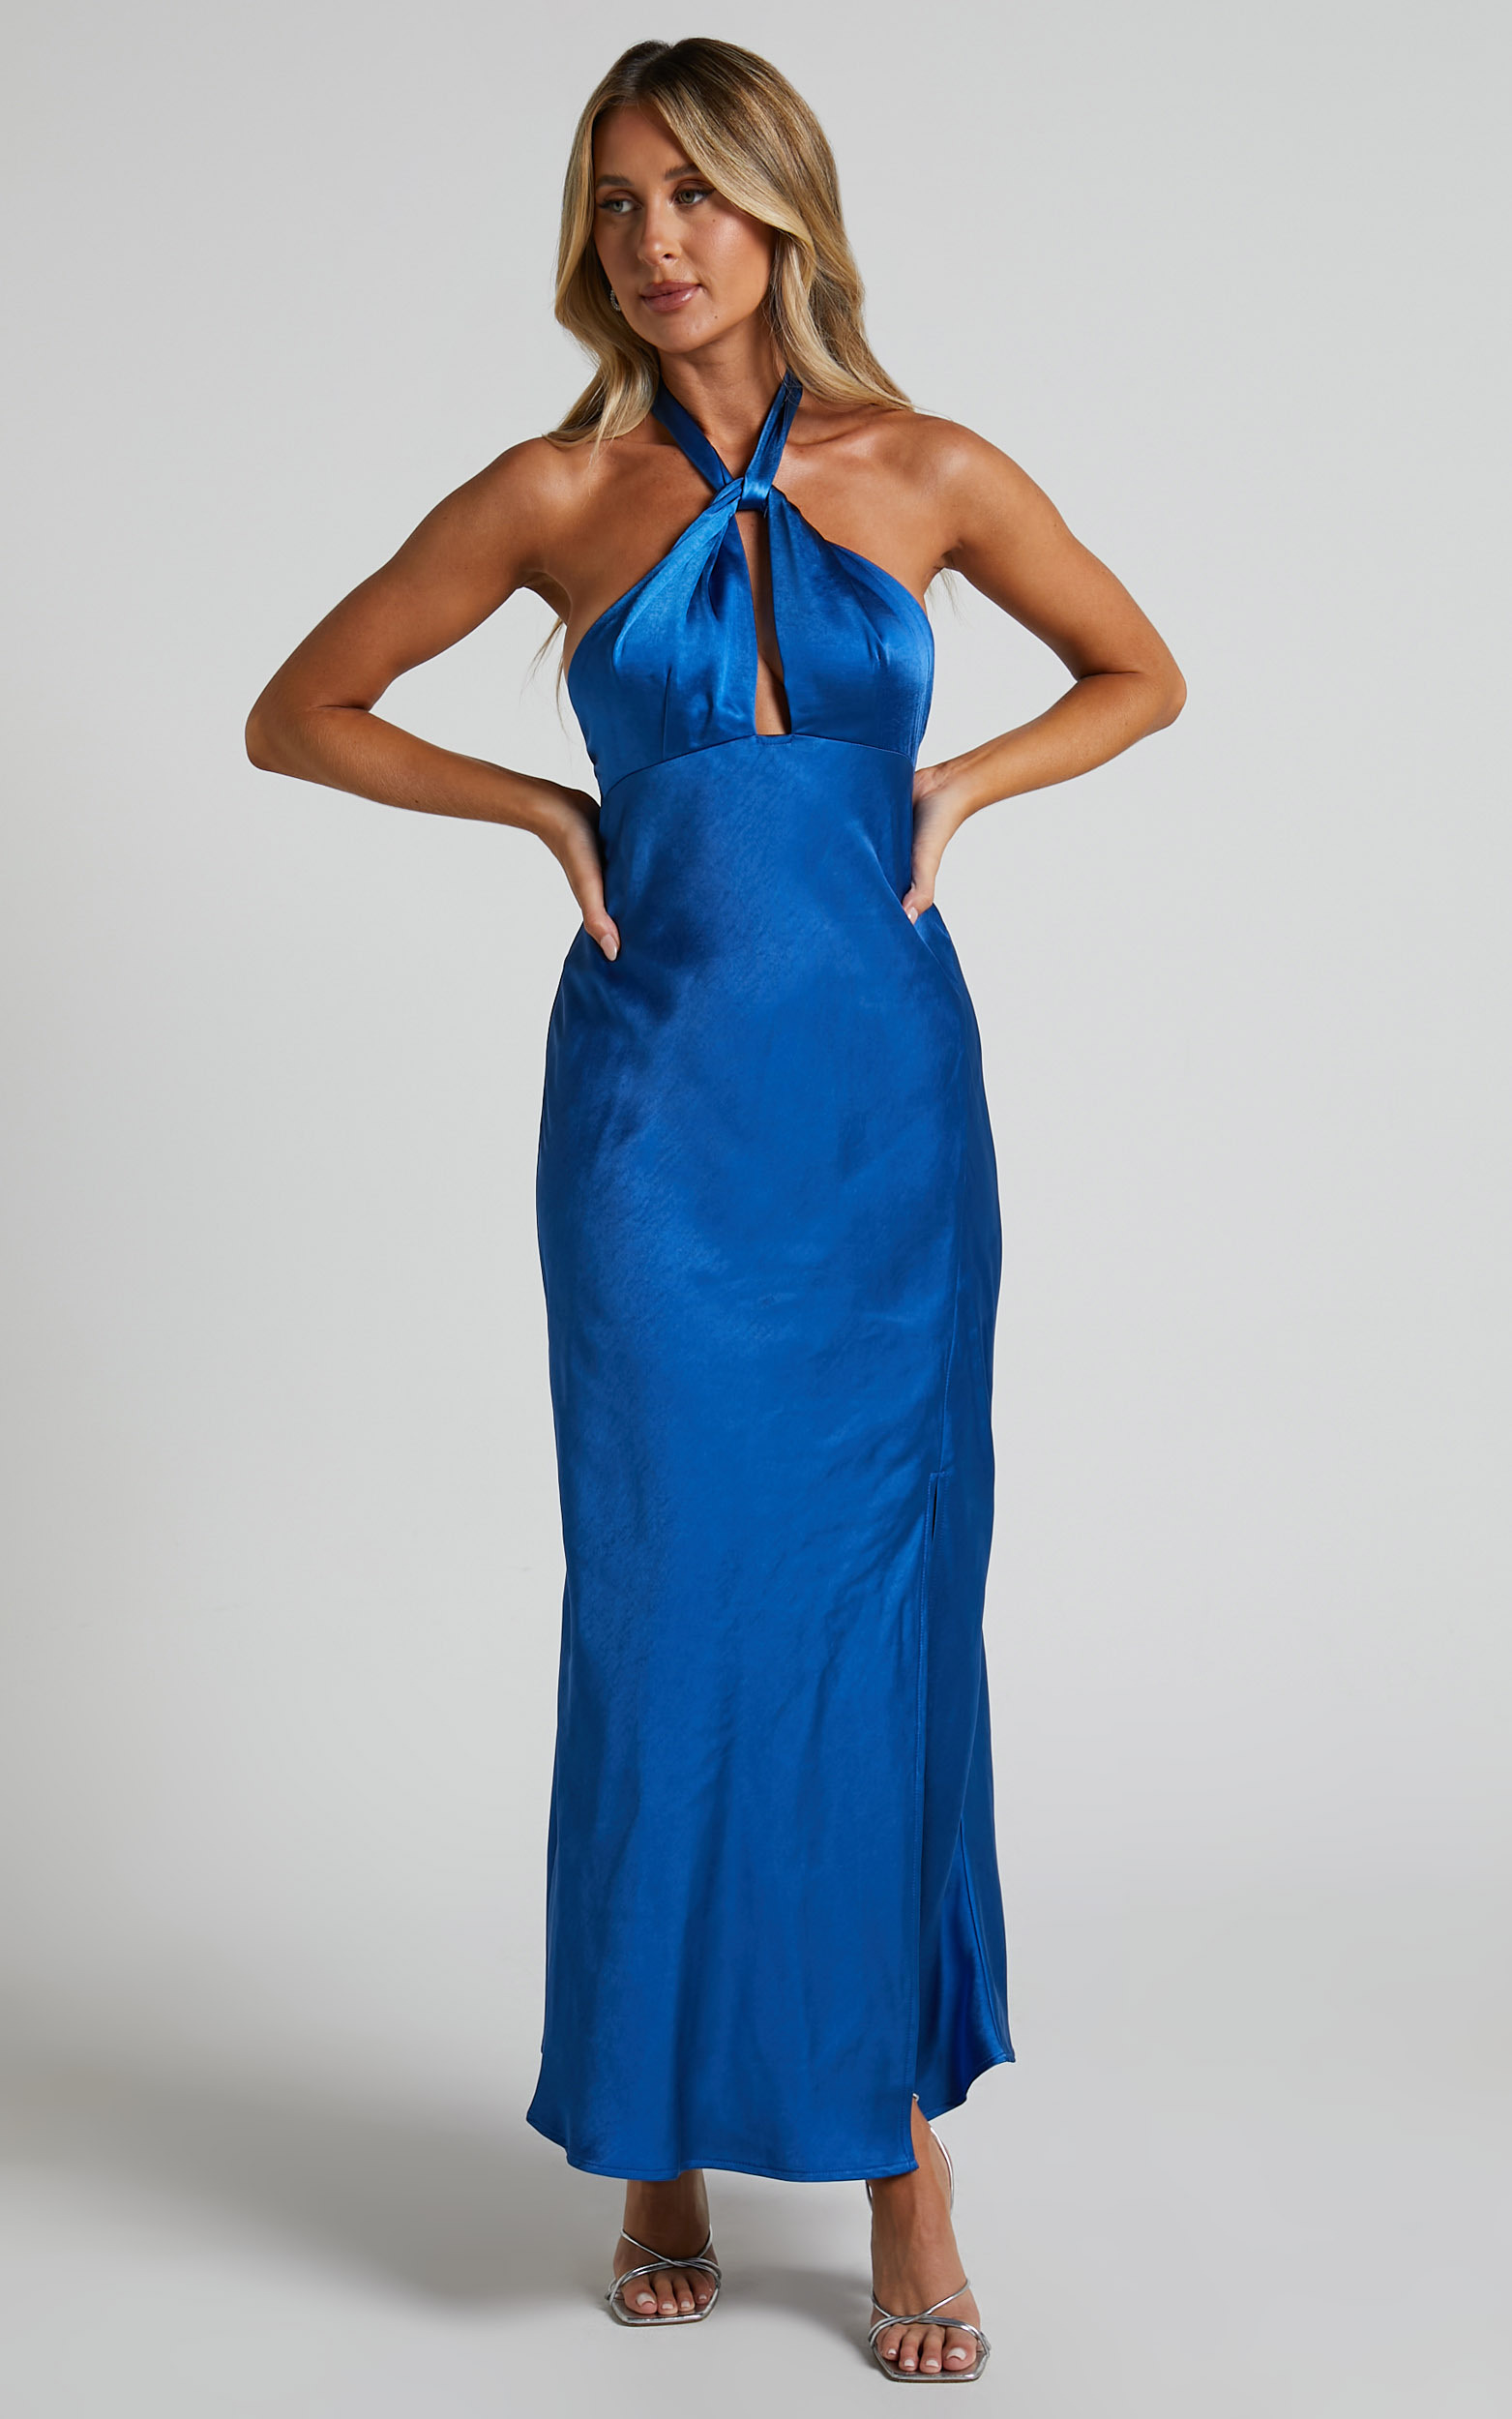 Clarabelle Halter Neck Thigh Slit Midi Dress in Cobalt Blue | Showpo